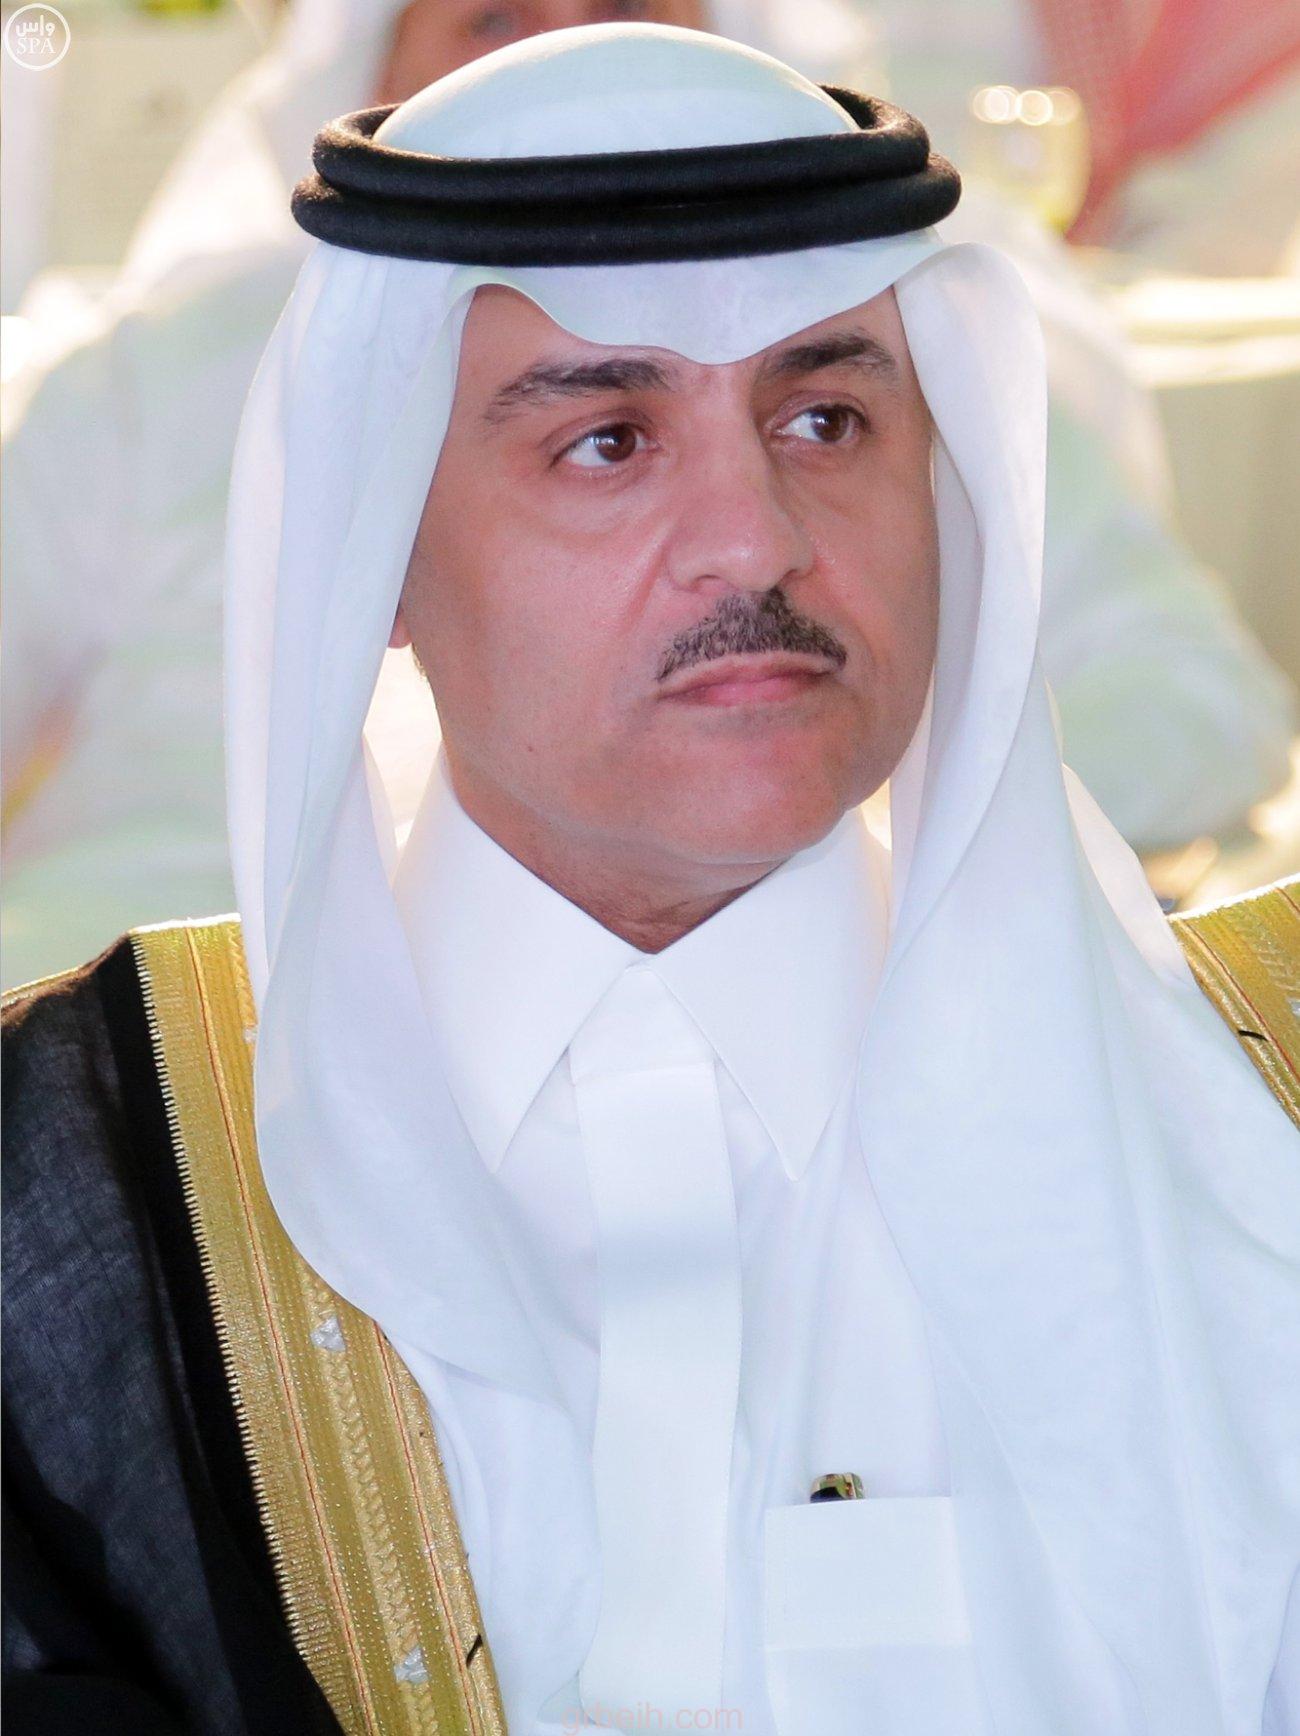 الأمير فيصل بن مقرن يرأس اجتماعا لجمعية المودة للتنمية الأسرية بمكة المكرمة